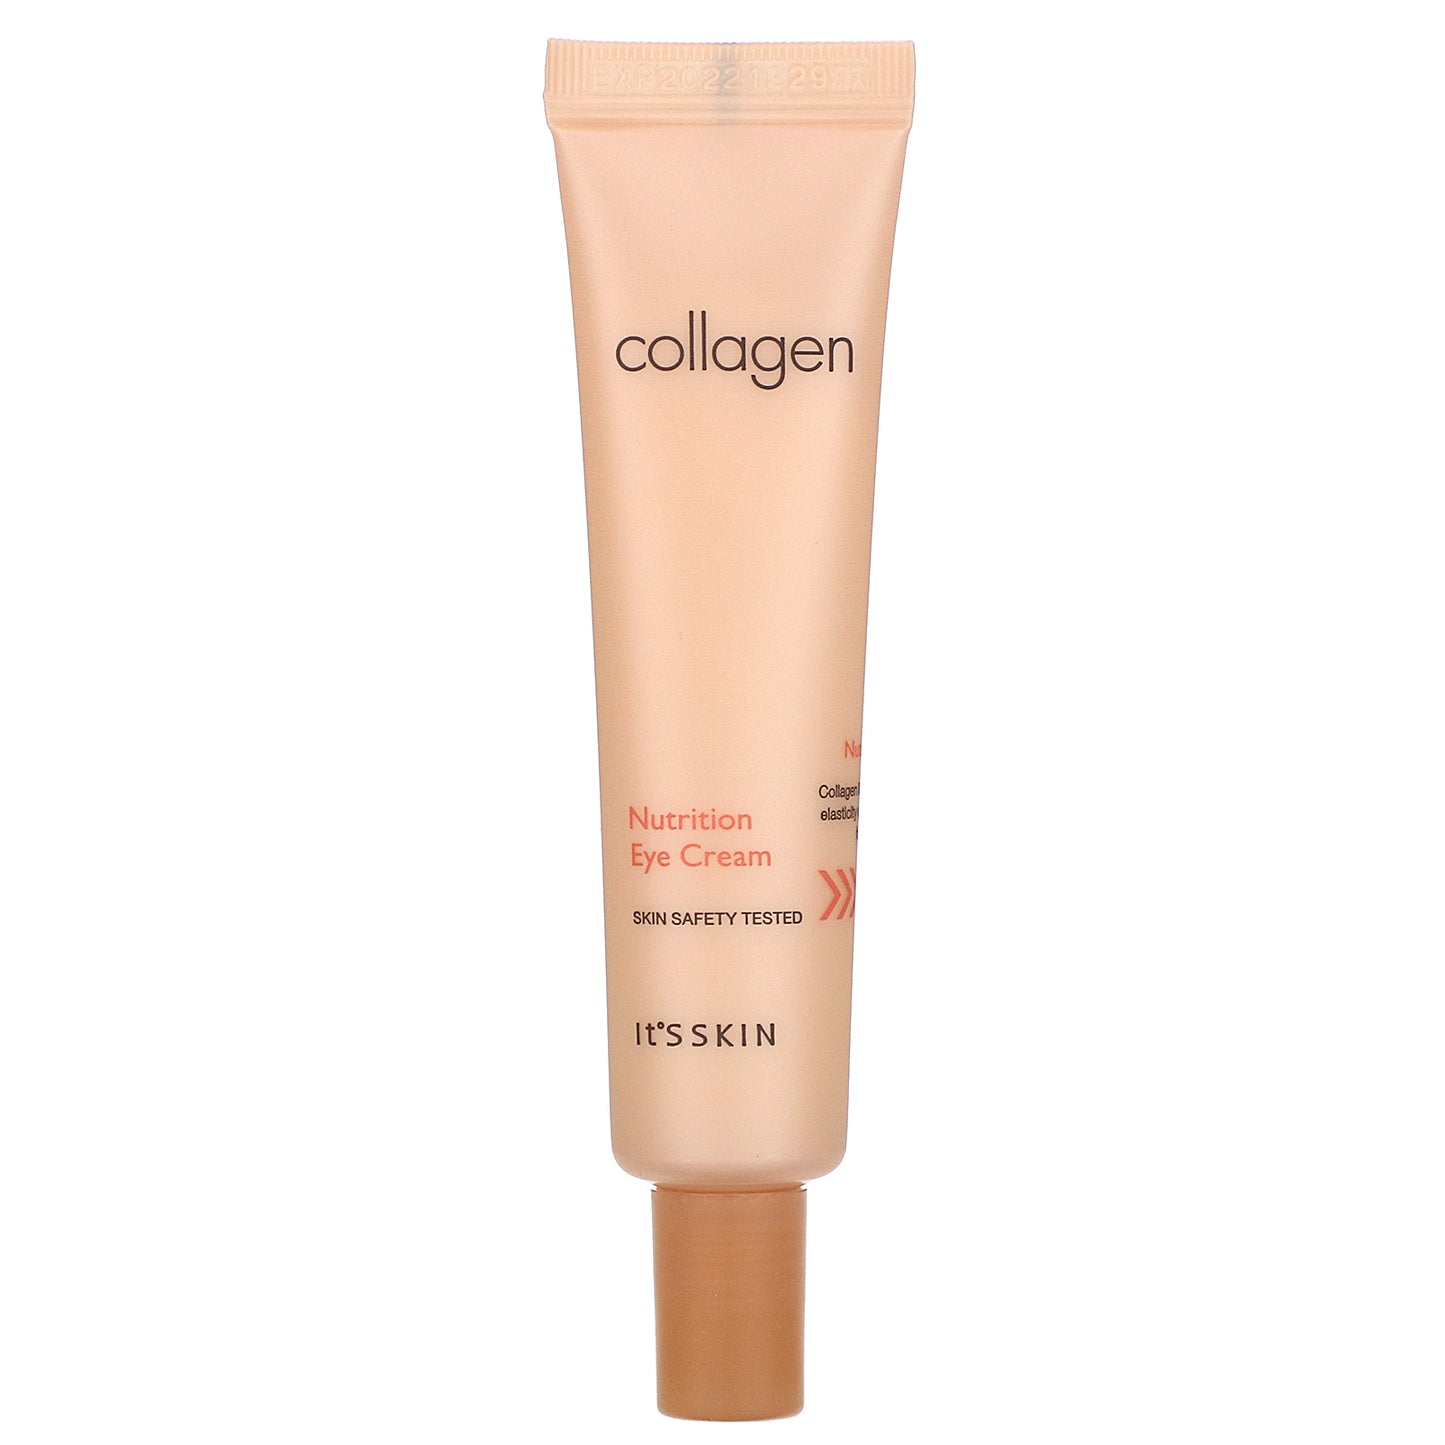 IT'S SKIN Collagen Nutrition Eye Cream - Crema para ojos con colágeno